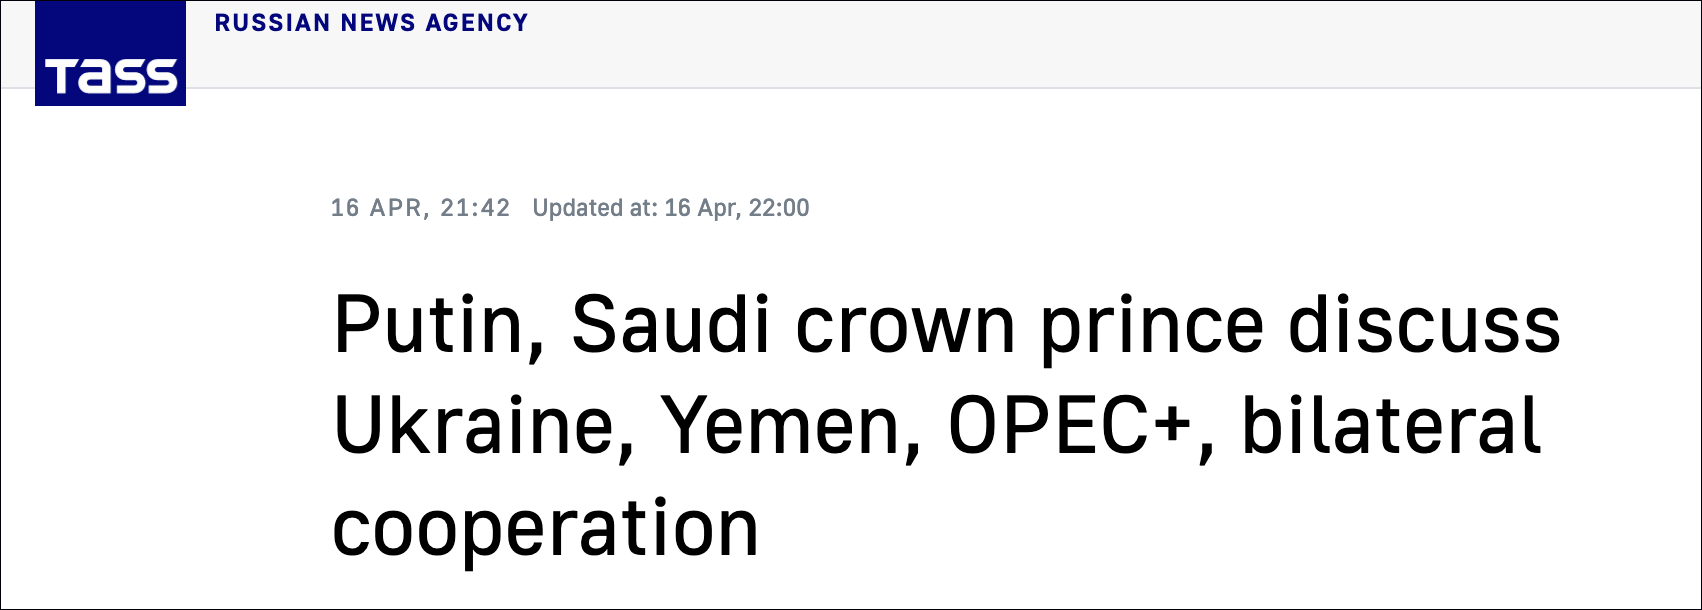 拒绝美石油增产提议后 沙特积极评价“欧佩克+”工作